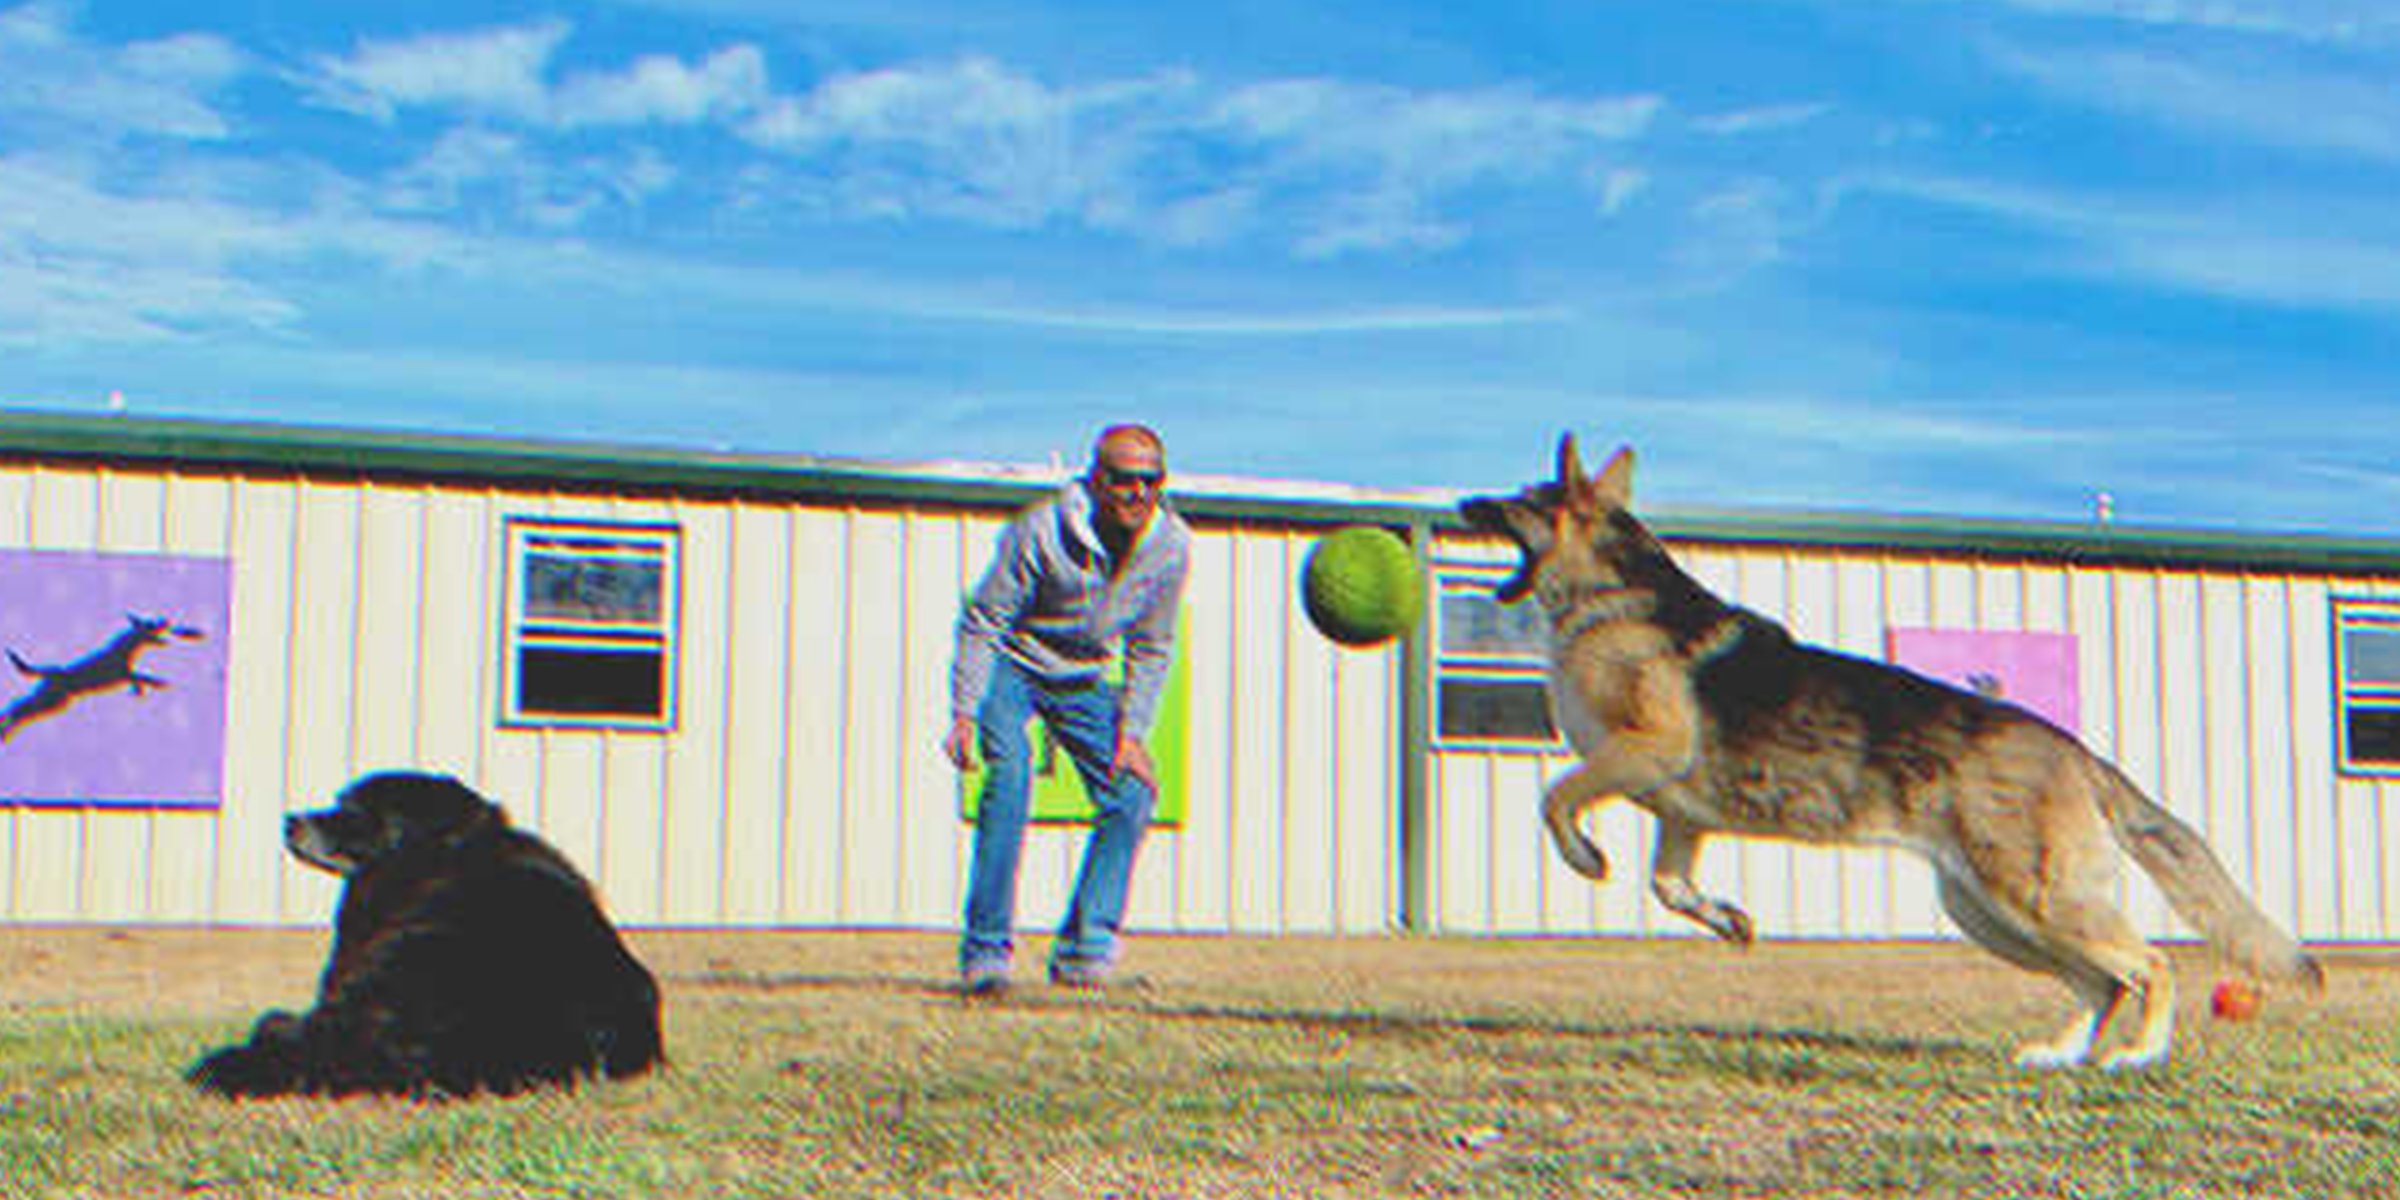 Mann spielt mit 2 Hunden | Quelle: Shutterstock